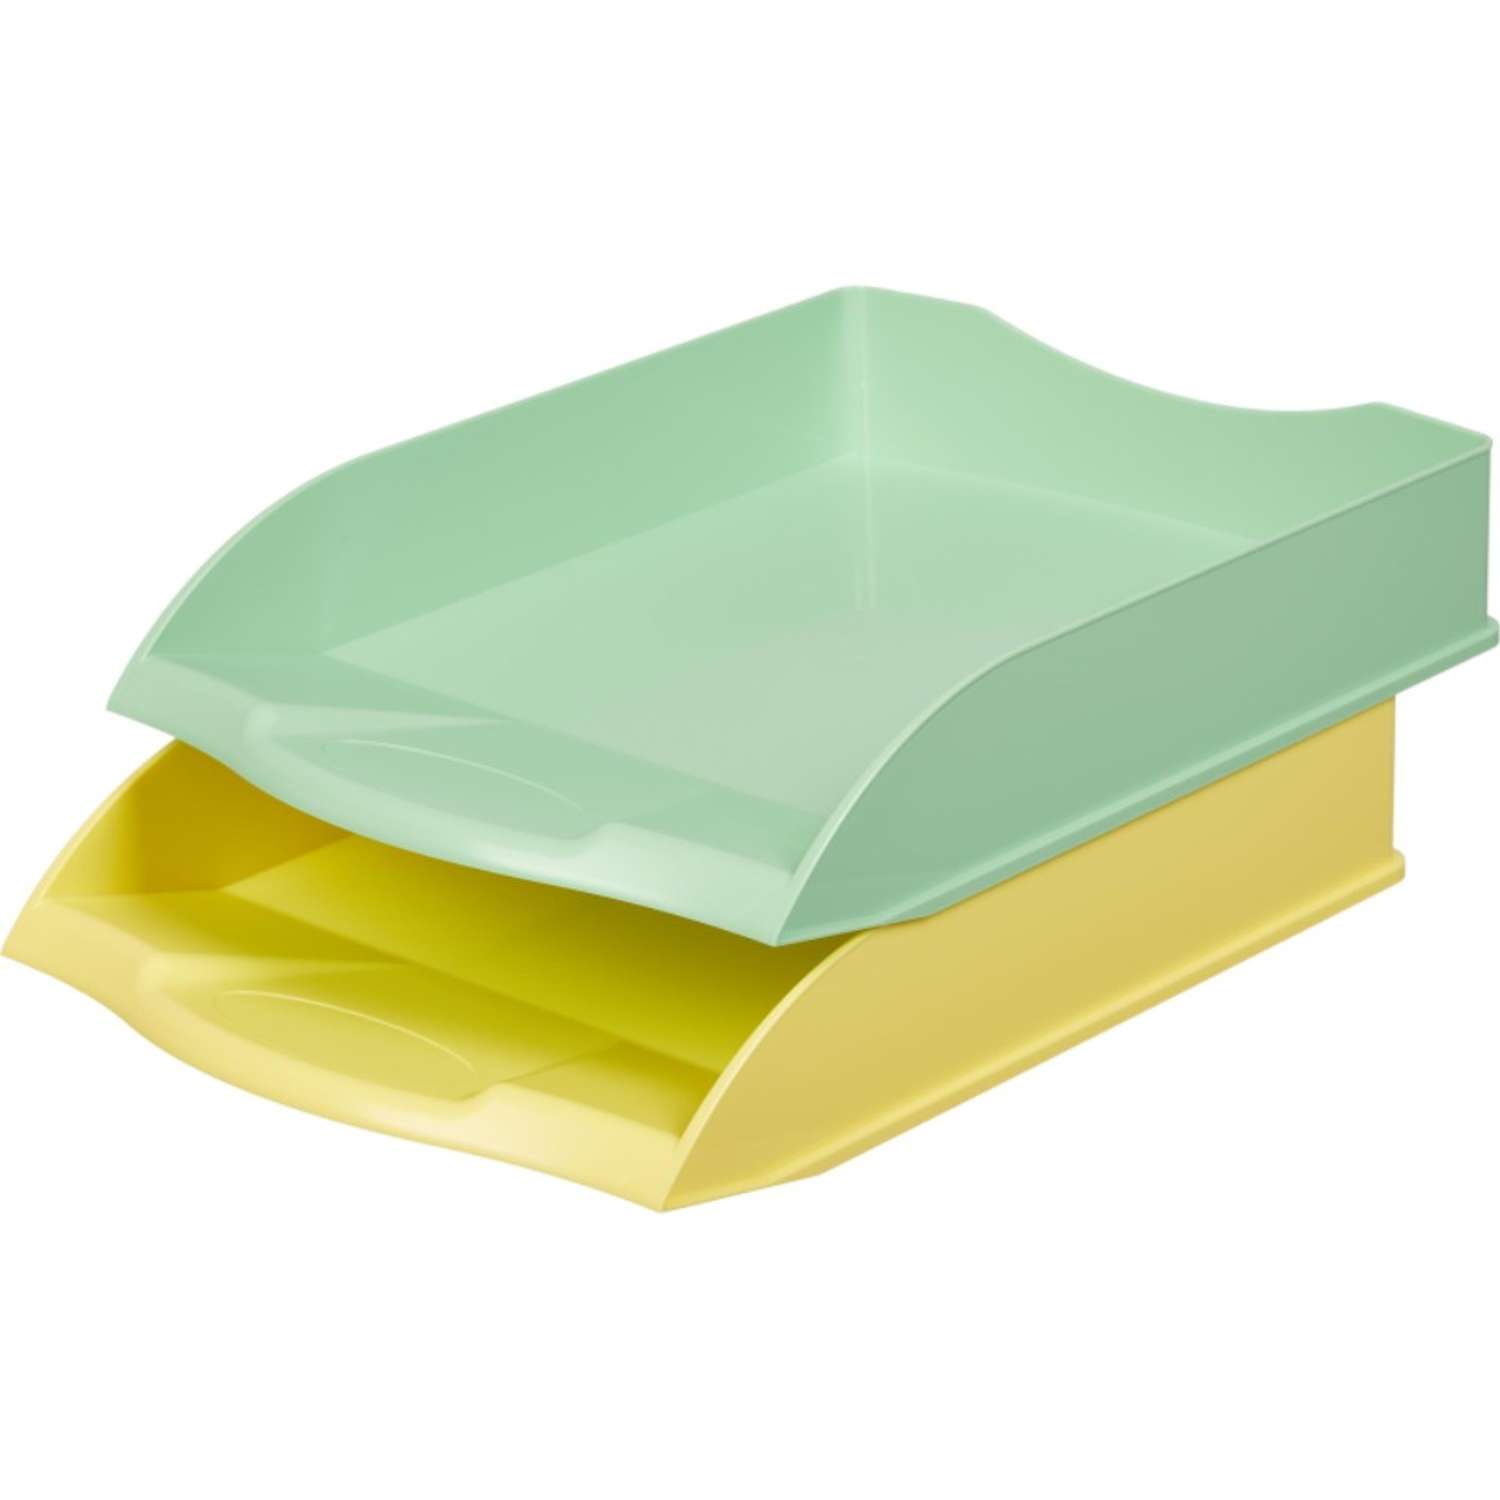 Лоток Attache горизонтальный Selection 2 шт в упаковке зеленый и желтый - фото 1